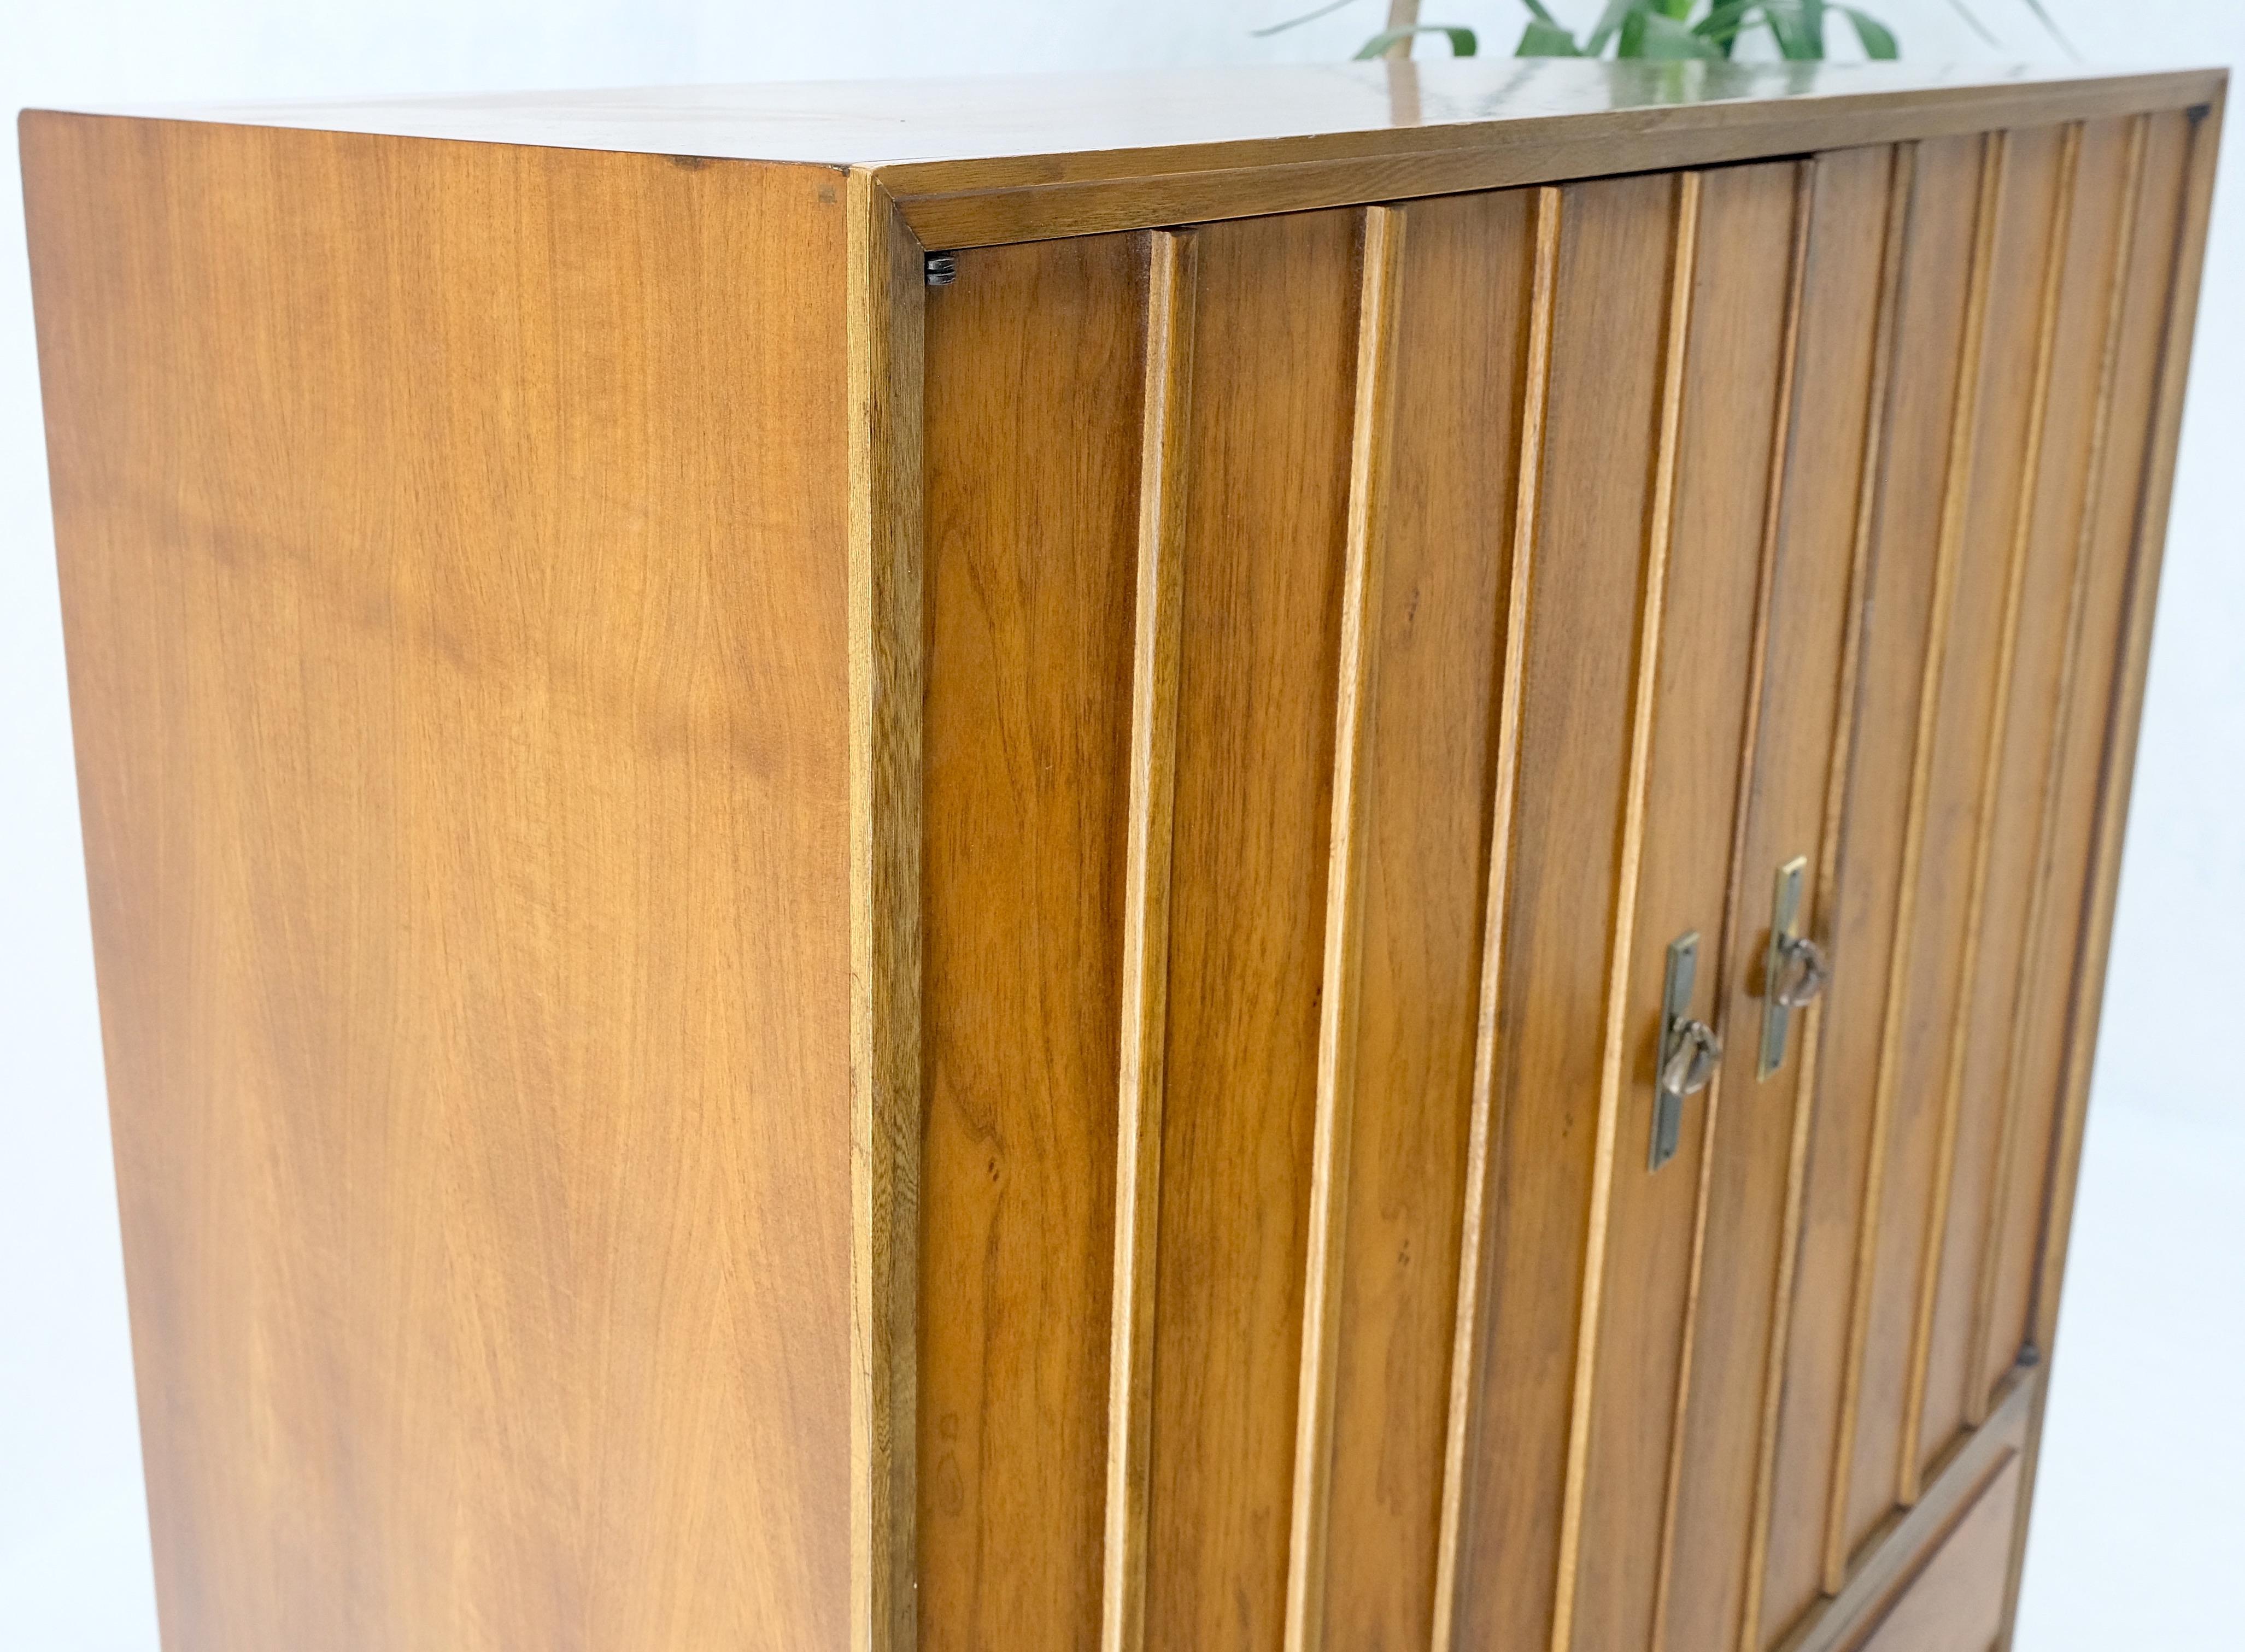 Mid-Century Modern Double Door Compartment Walnut Gentleman's Chest Dresser MINT In Good Condition For Sale In Rockaway, NJ